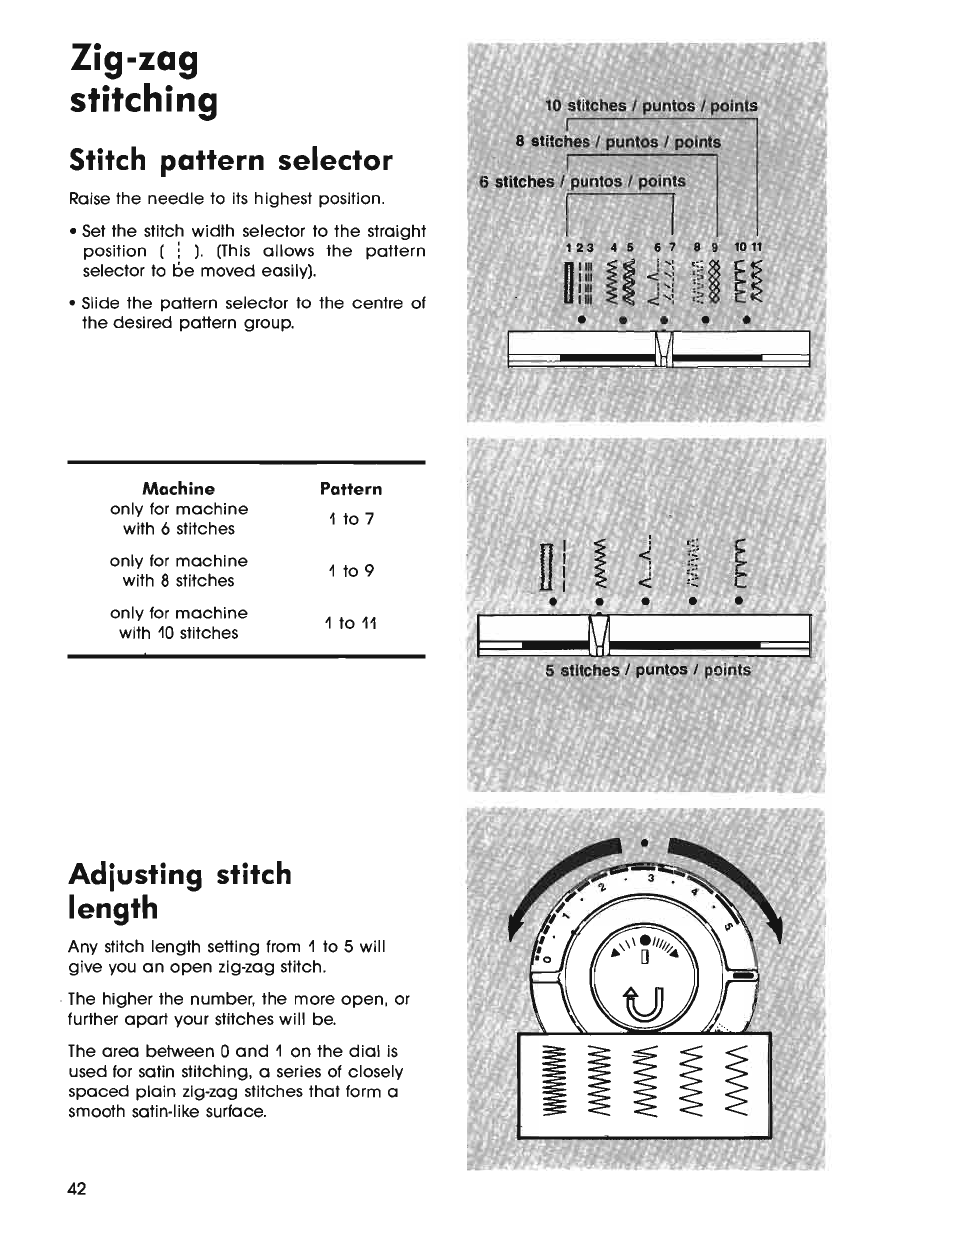 Zig-zag, Stitching, Stitch pattern selector | Adjusting stitch length, Zig-zag stitching | SINGER 7025 User Manual | Page 44 / 78